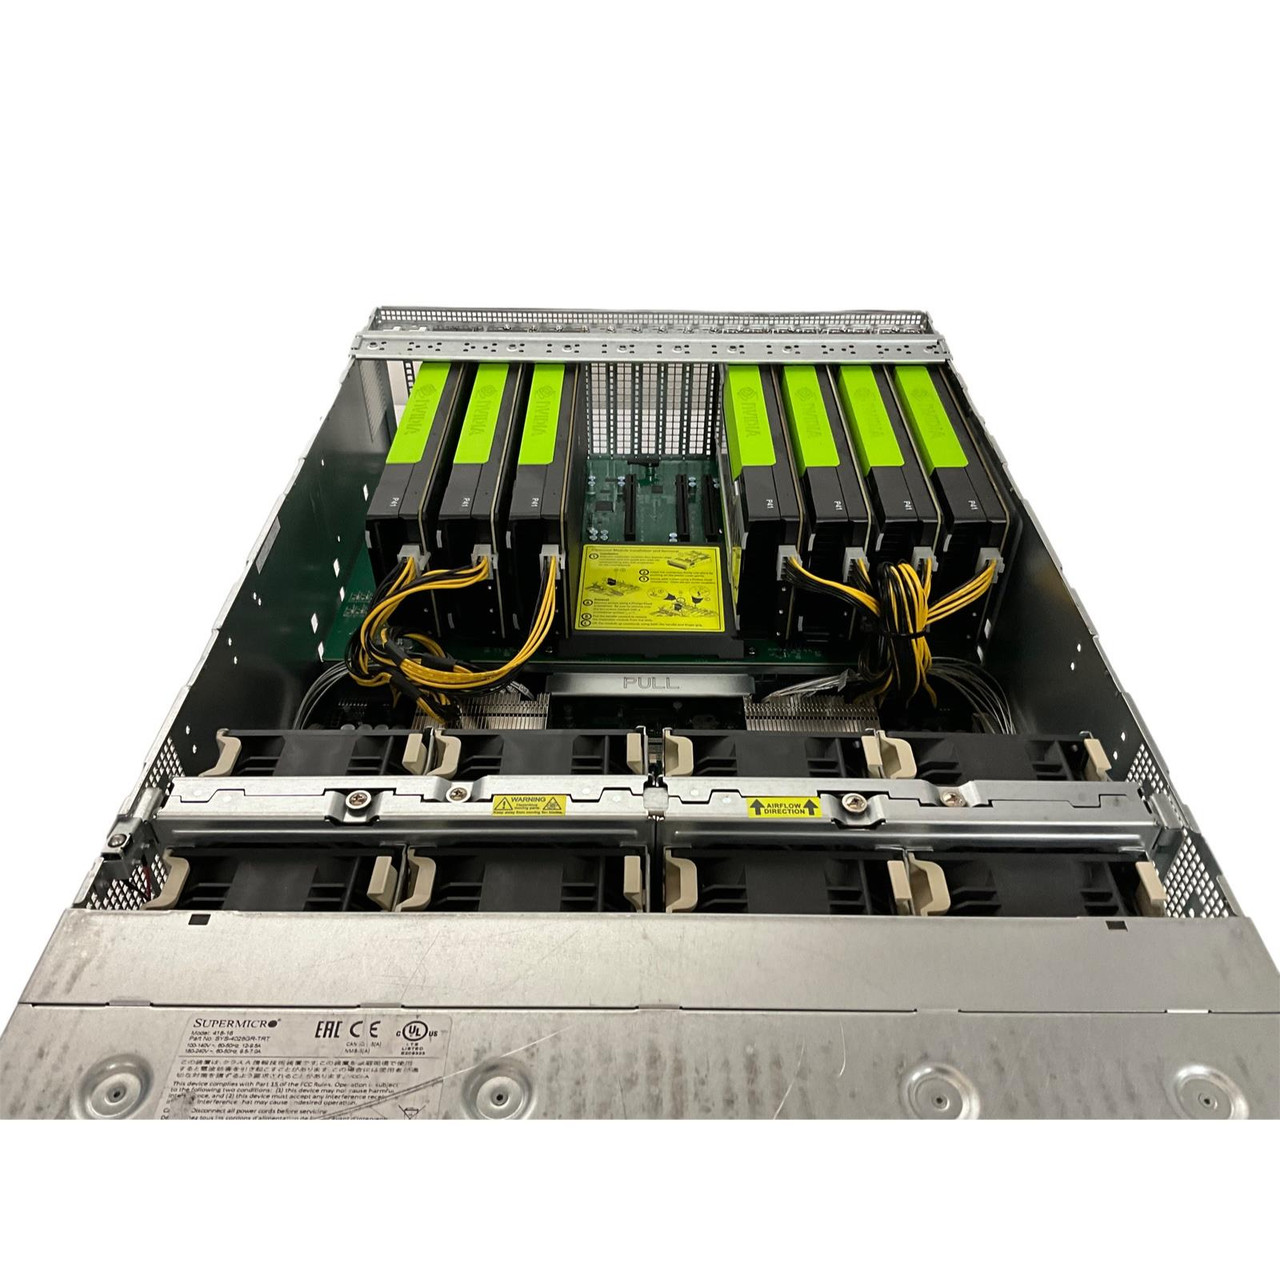 Supermicro 4U X10DRG-OT+ 8x GPU 2x E5-2690 V4 CPUs 2x 480GB SSD 4x PSU  Server